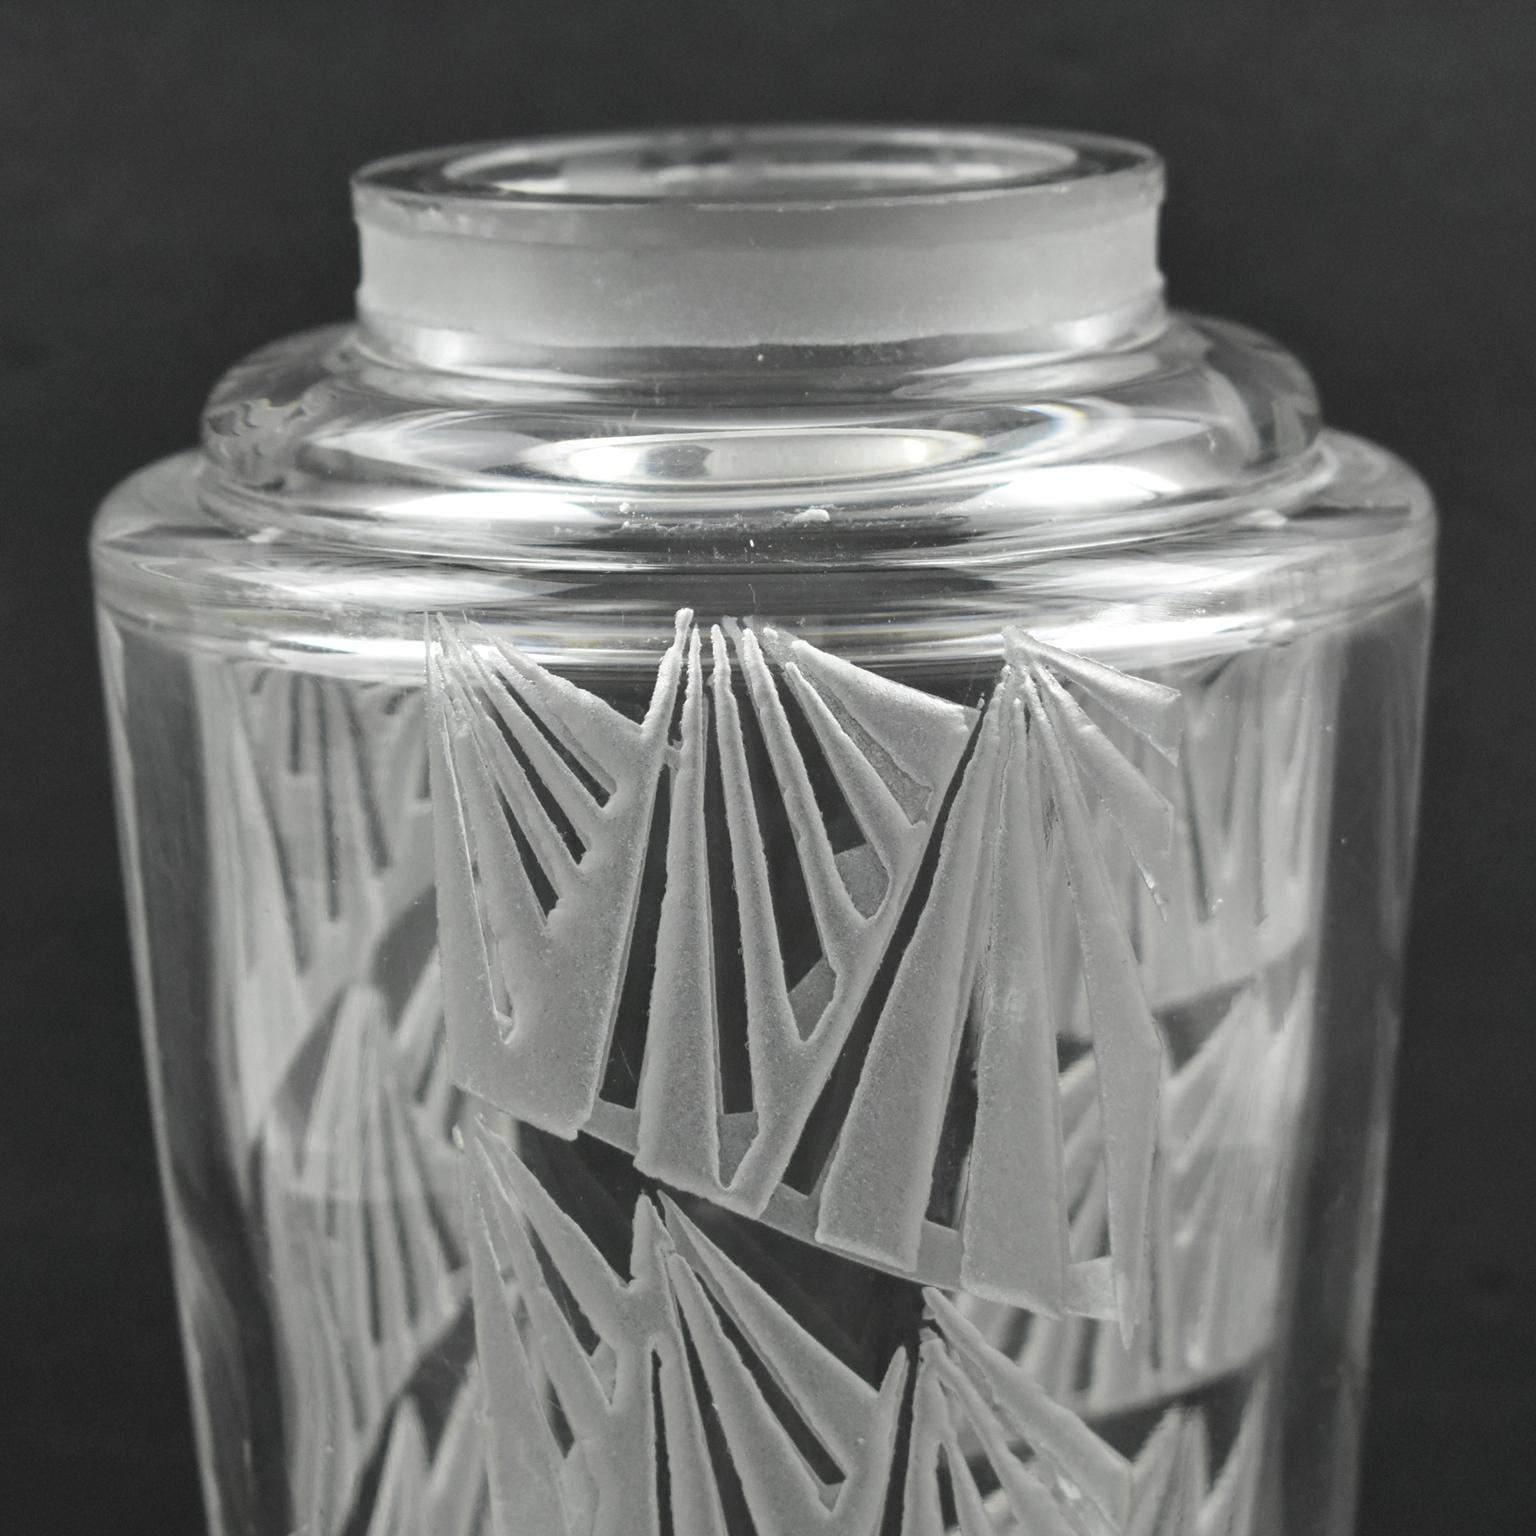 Le designer français Jean Luce (1895-1964) a conçu ce joli vase en verre gravé à l'acide dans les années 1930. Le motif géométrique est répété tout autour du vase. La signature se trouve sur la face inférieure avec le monogramme habituel de Luce.